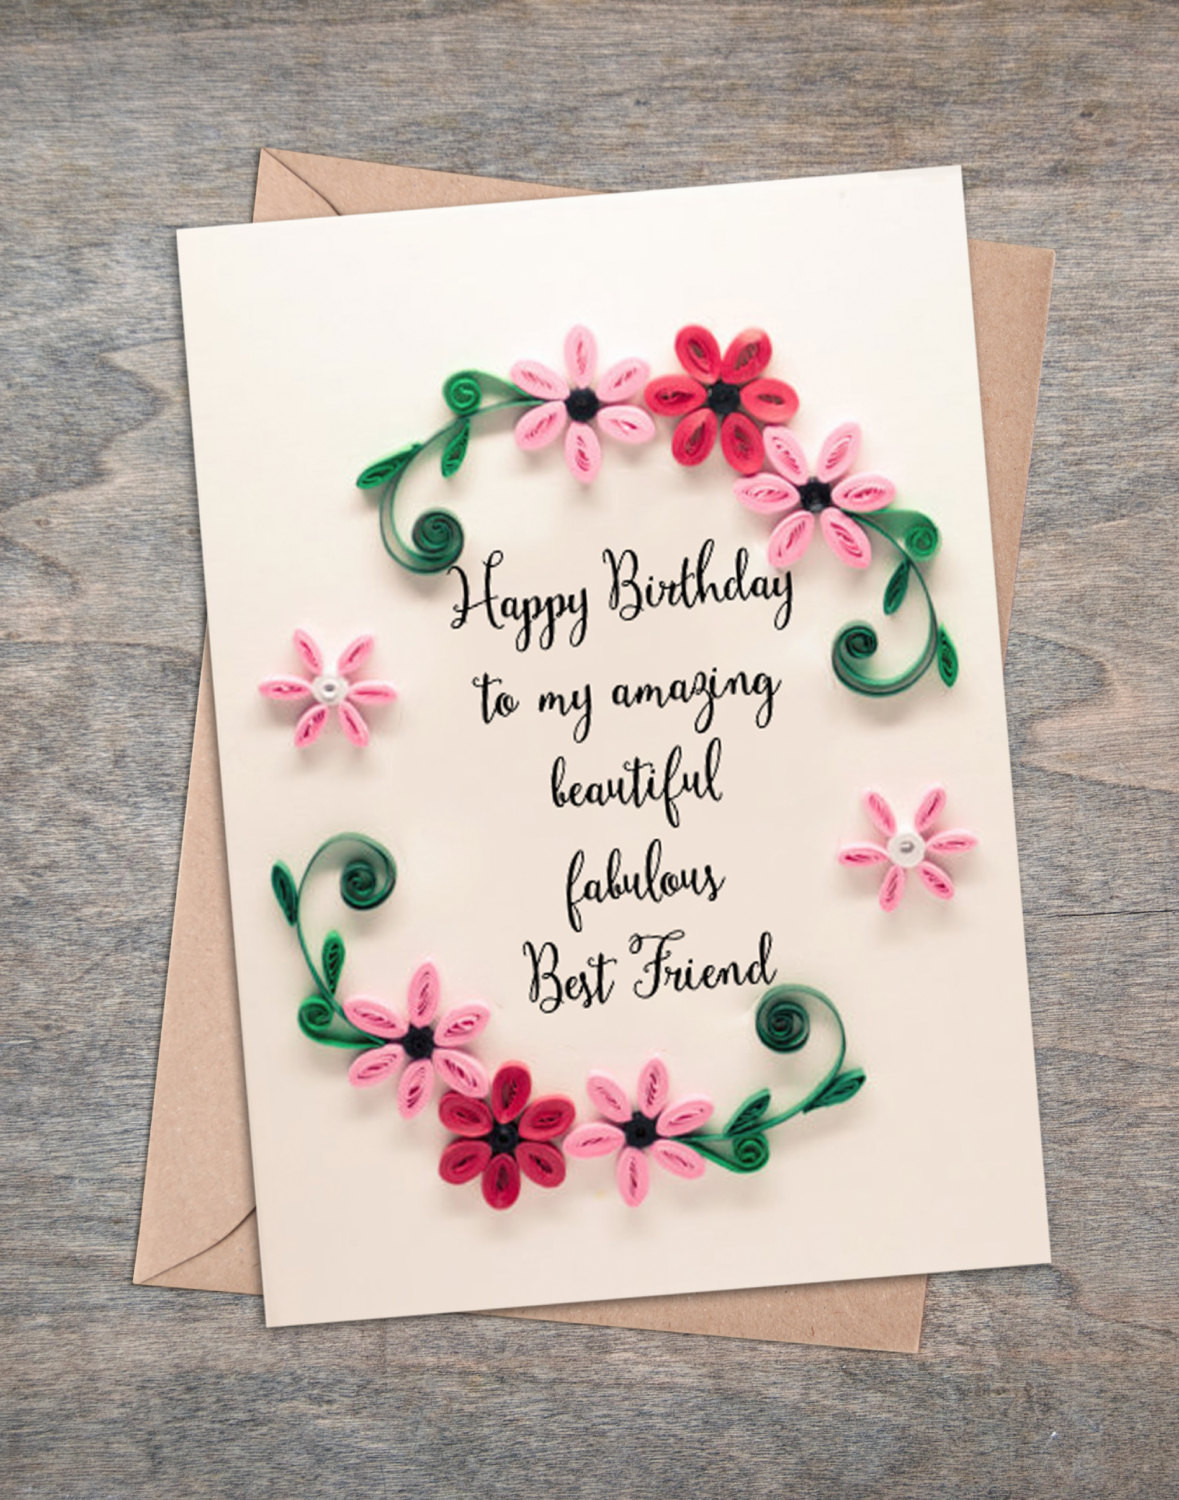 Best ideas about Friend Birthday Card Ideas
. Save or Pin Valentine present Best Friend Birthday Card Girlfriend Now.